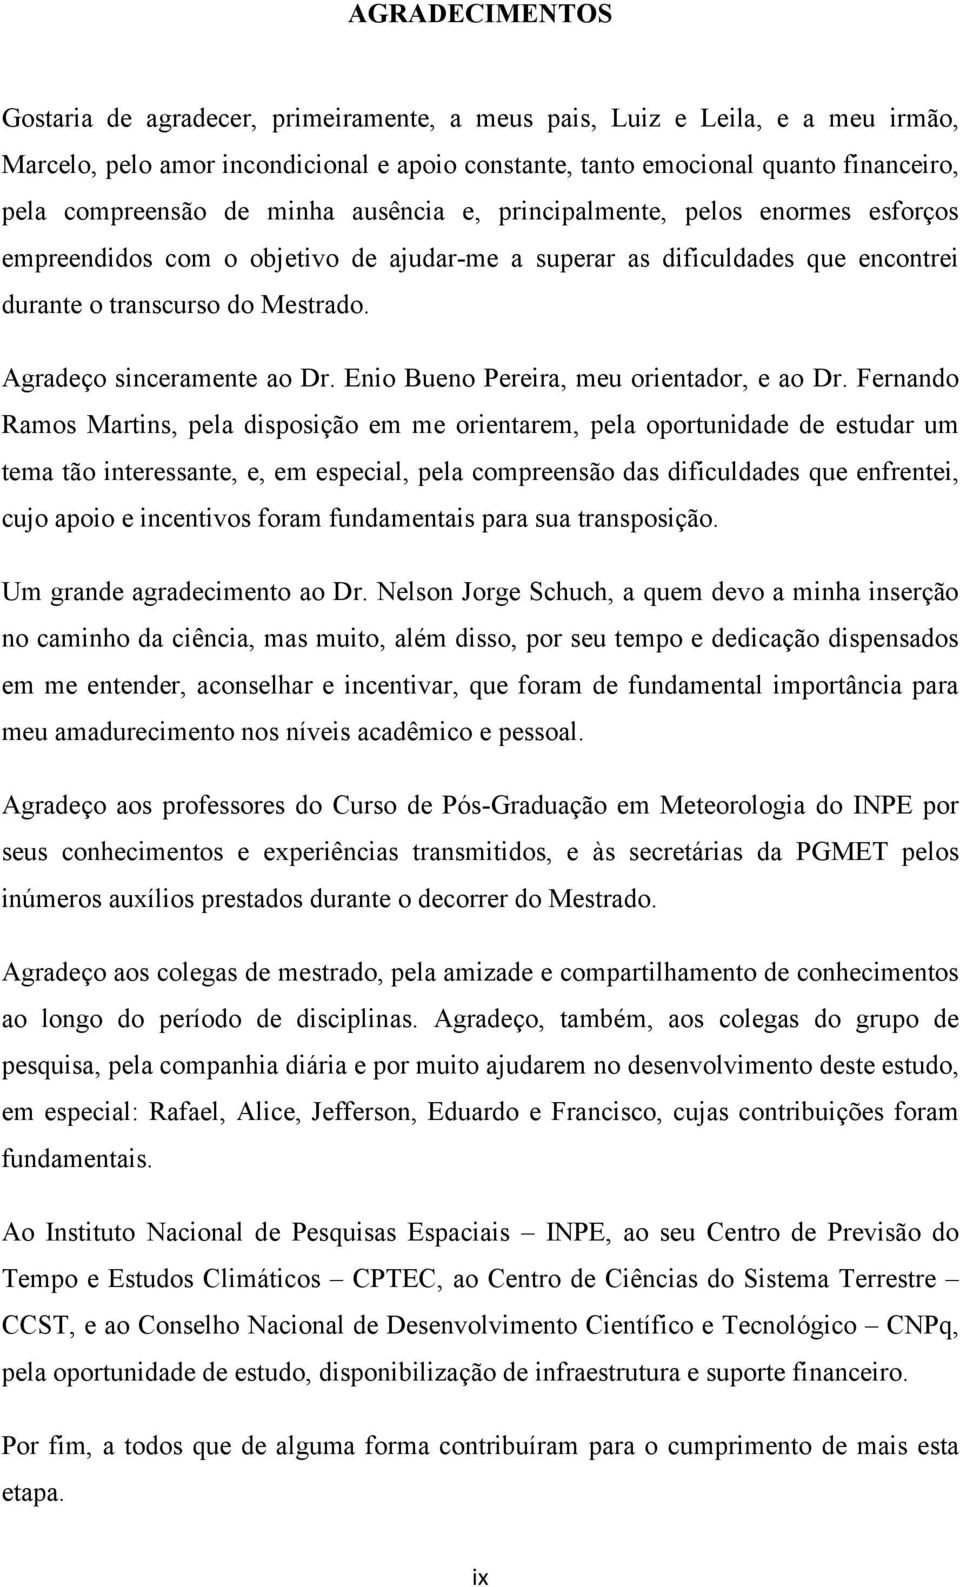 Agradeço sinceramente ao Dr. Enio Bueno Pereira, meu orientador, e ao Dr.